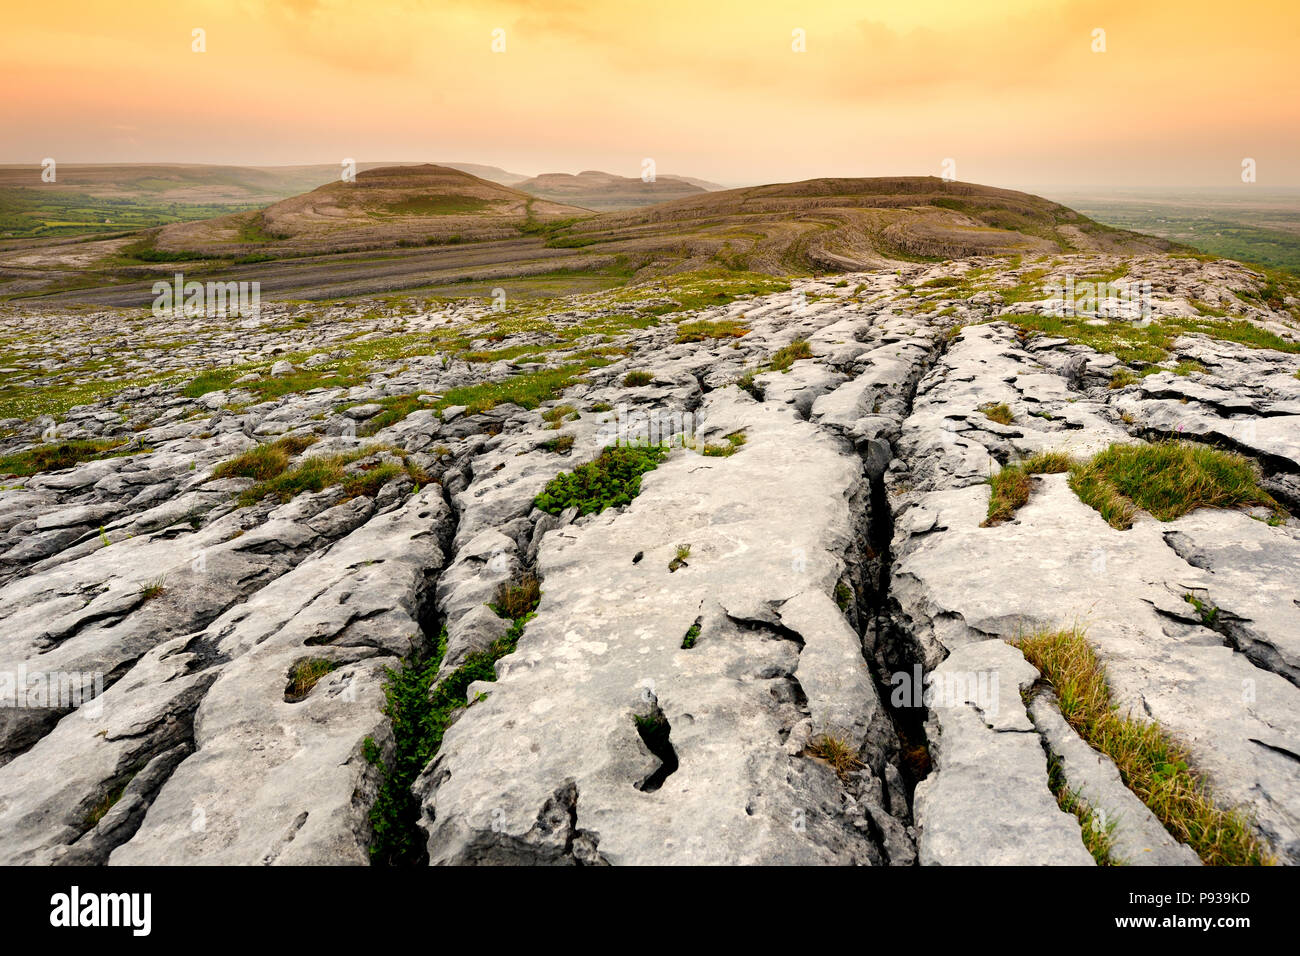 Spektakuläre Landschaft der Region Burren, County Clare, Irland. Freiliegende karst Kalkstein Grundgestein am Burren National Park. Raue irische Natur. Stockfoto